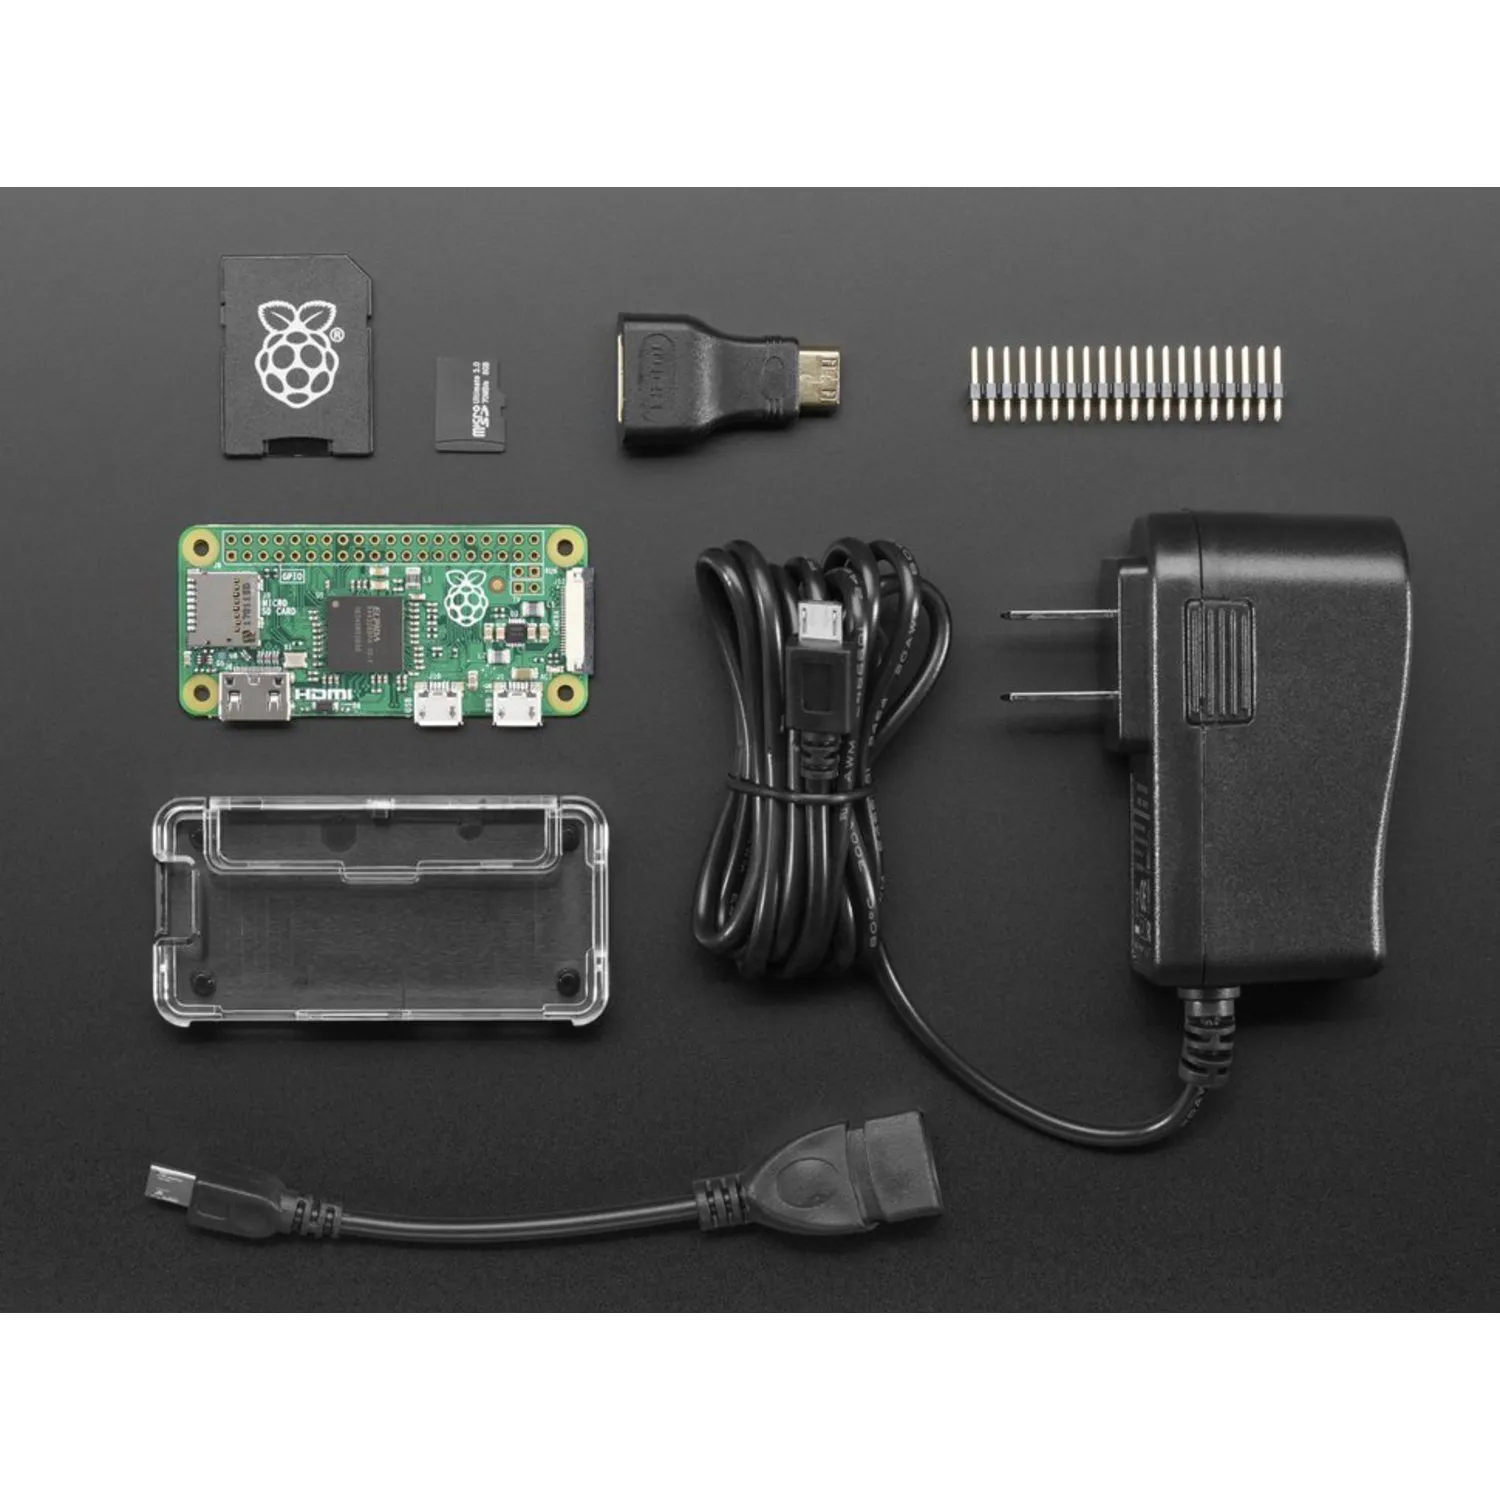 Photo of Raspberry Pi Zero Budget Pack - Includes Pi Zero v1.3